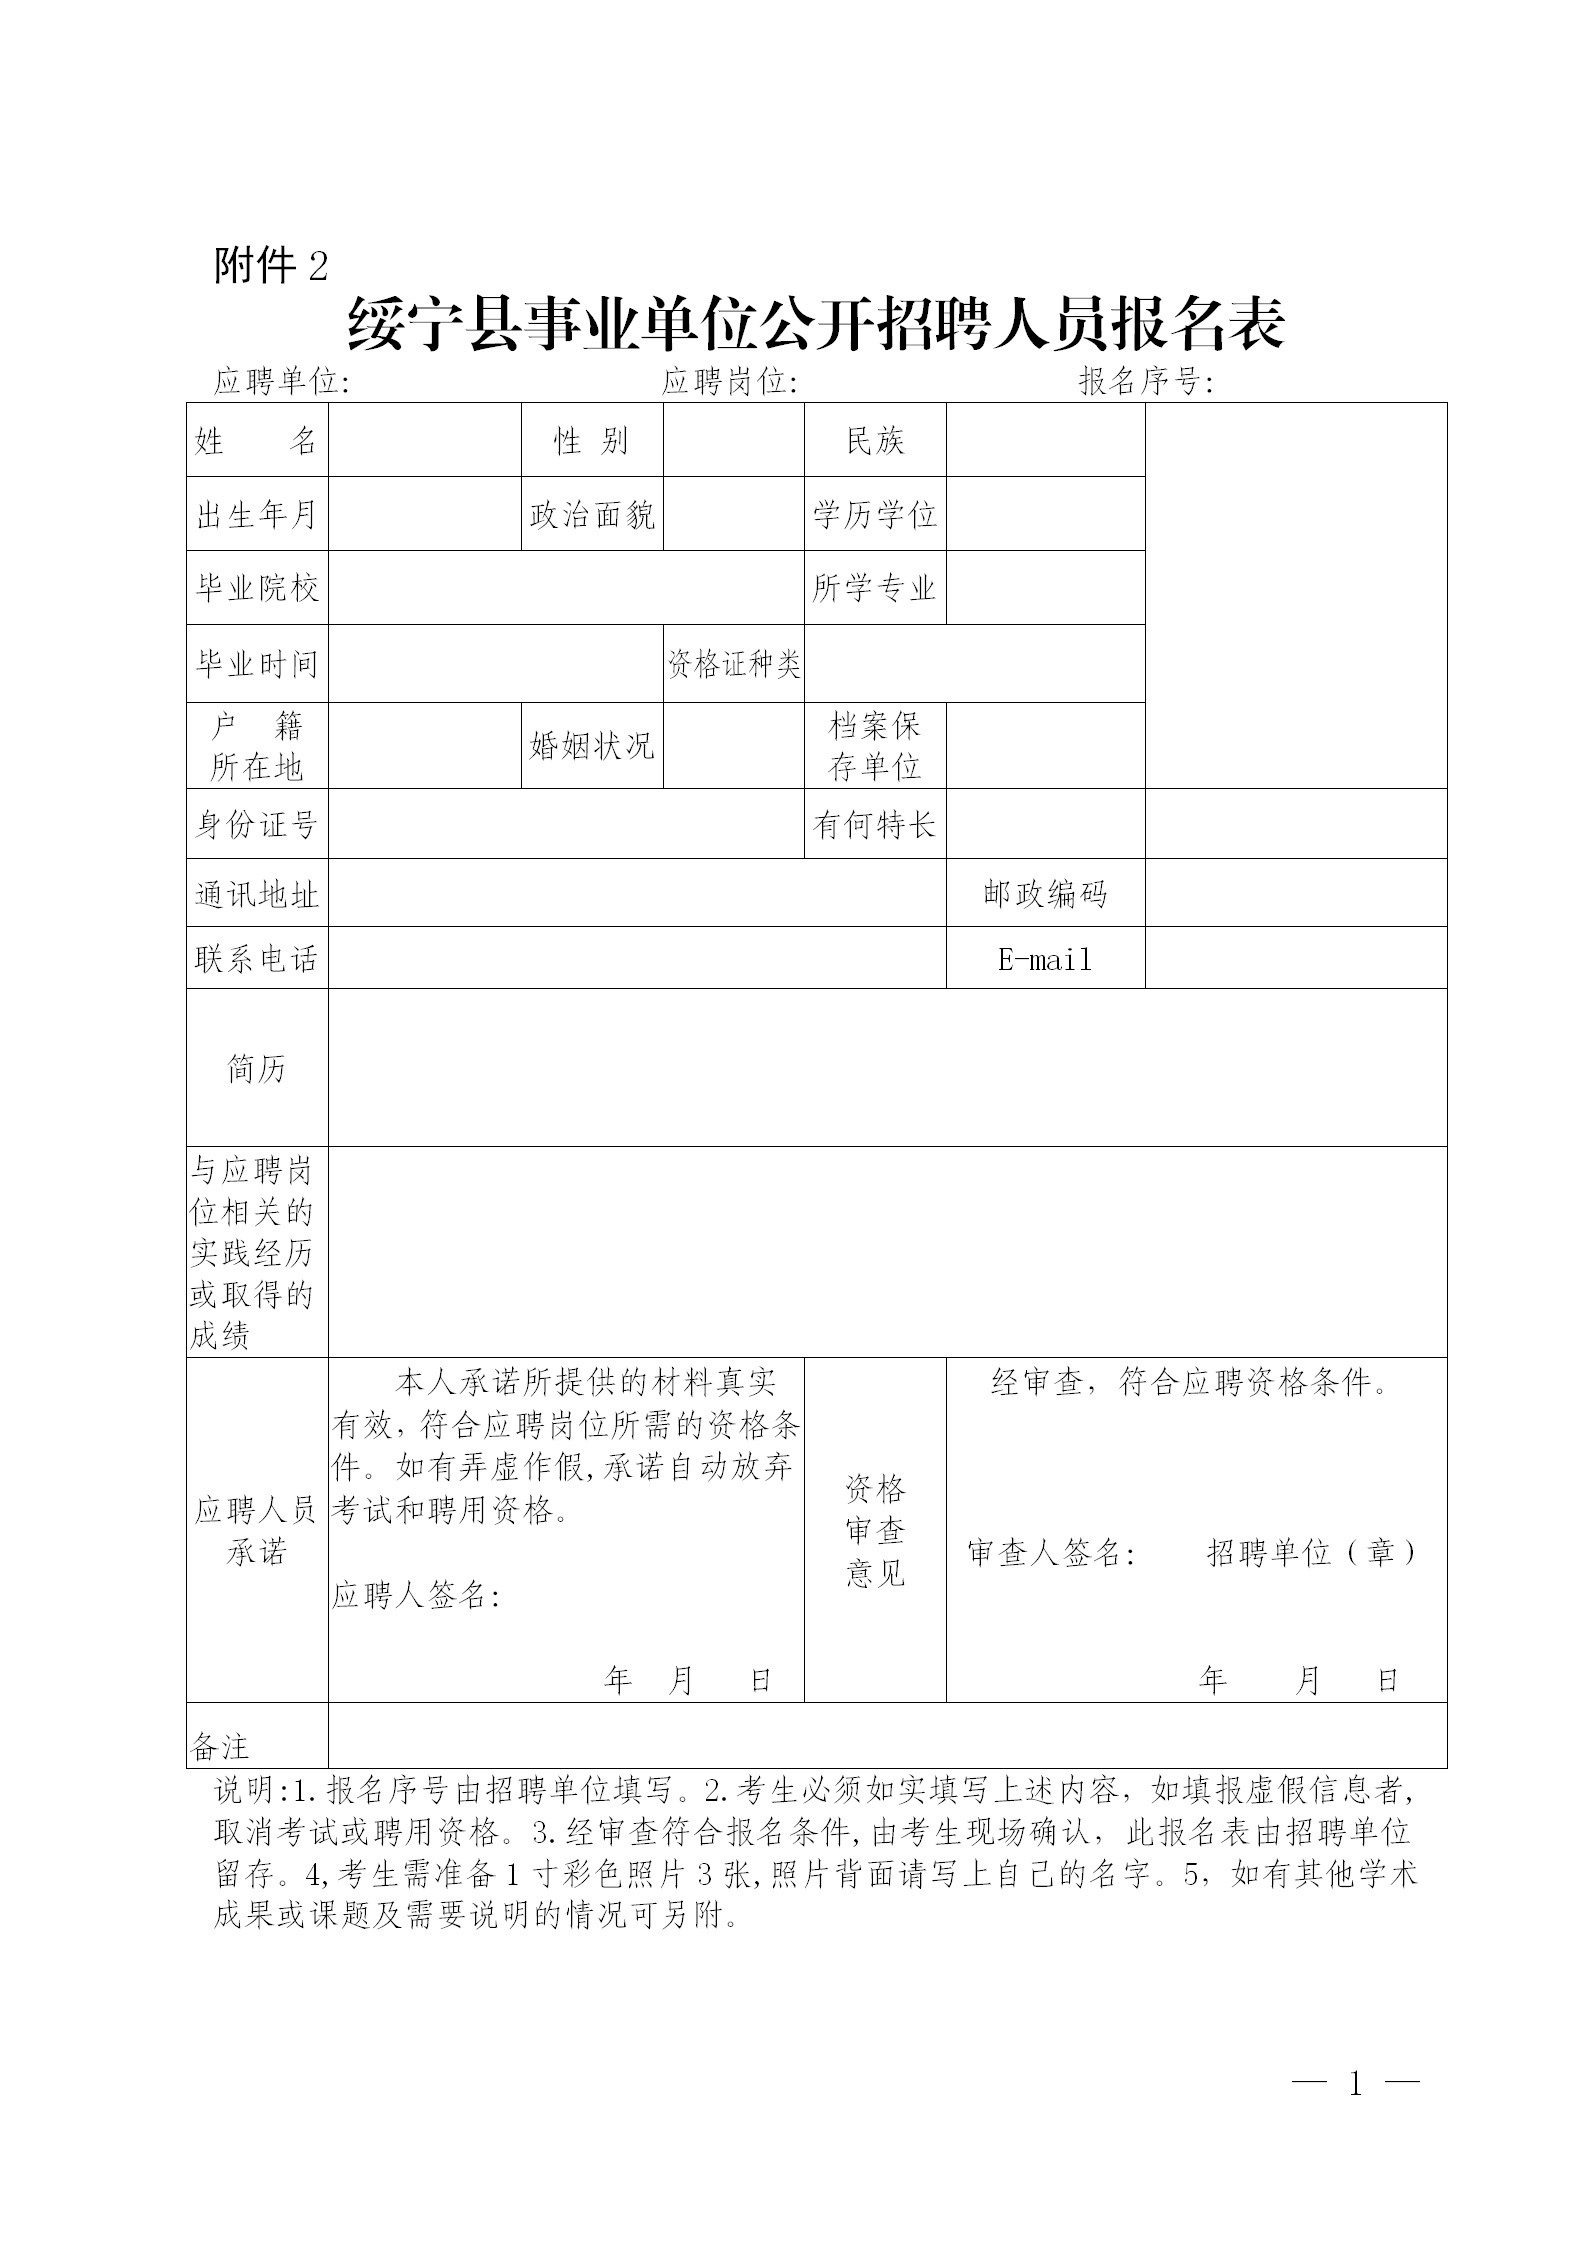 附件2：绥宁县事业单位公开招聘人员报名表_01.png